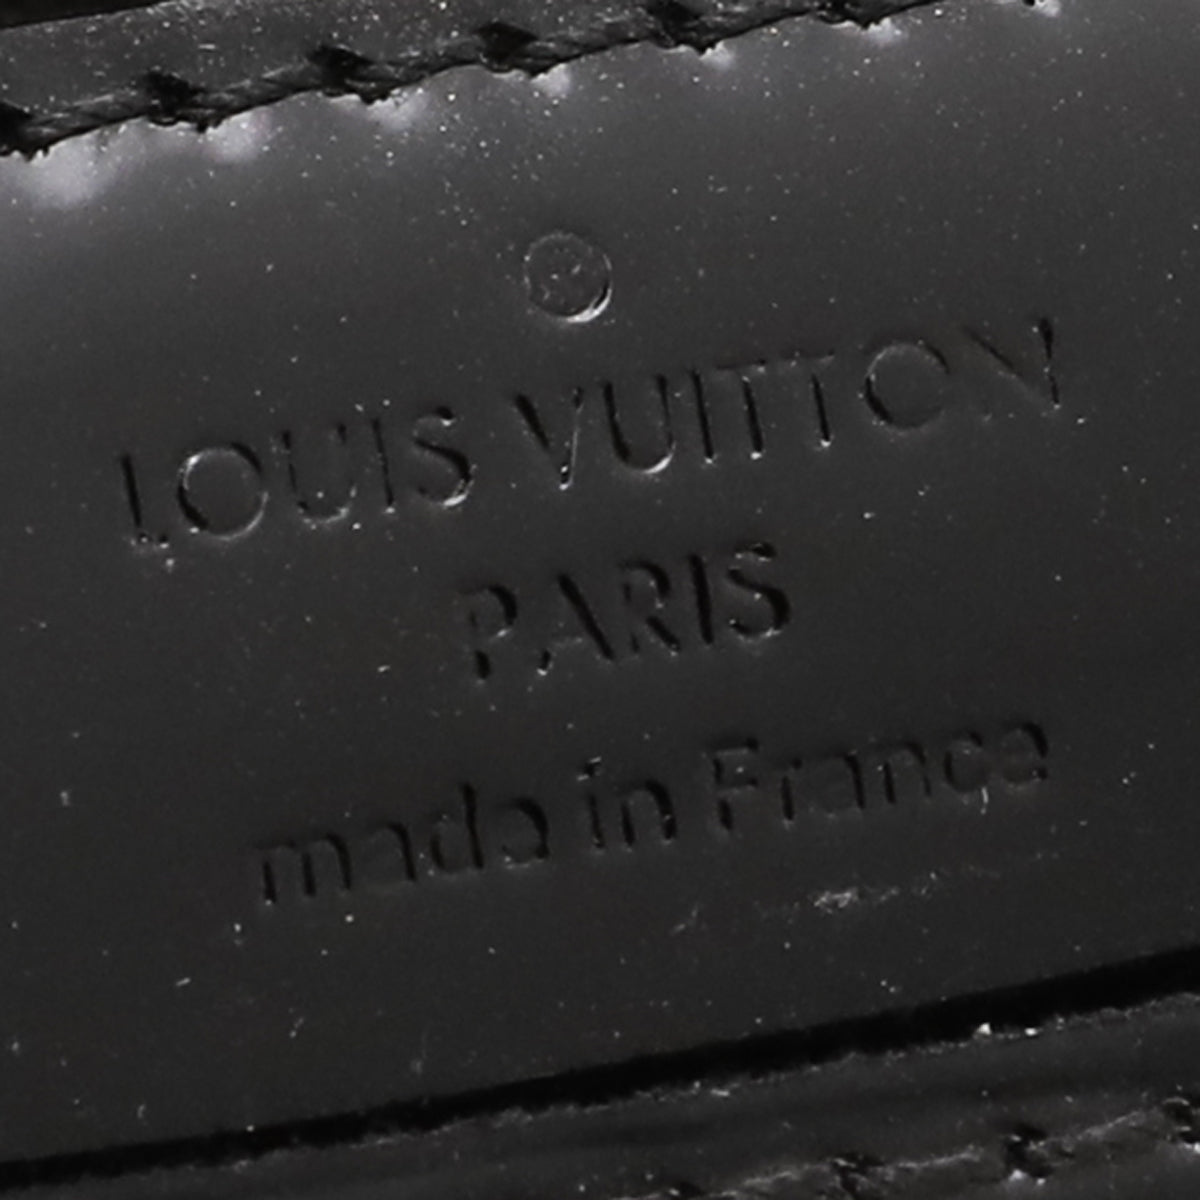 Louis Vuitton Electric Noir Louise PM Bag